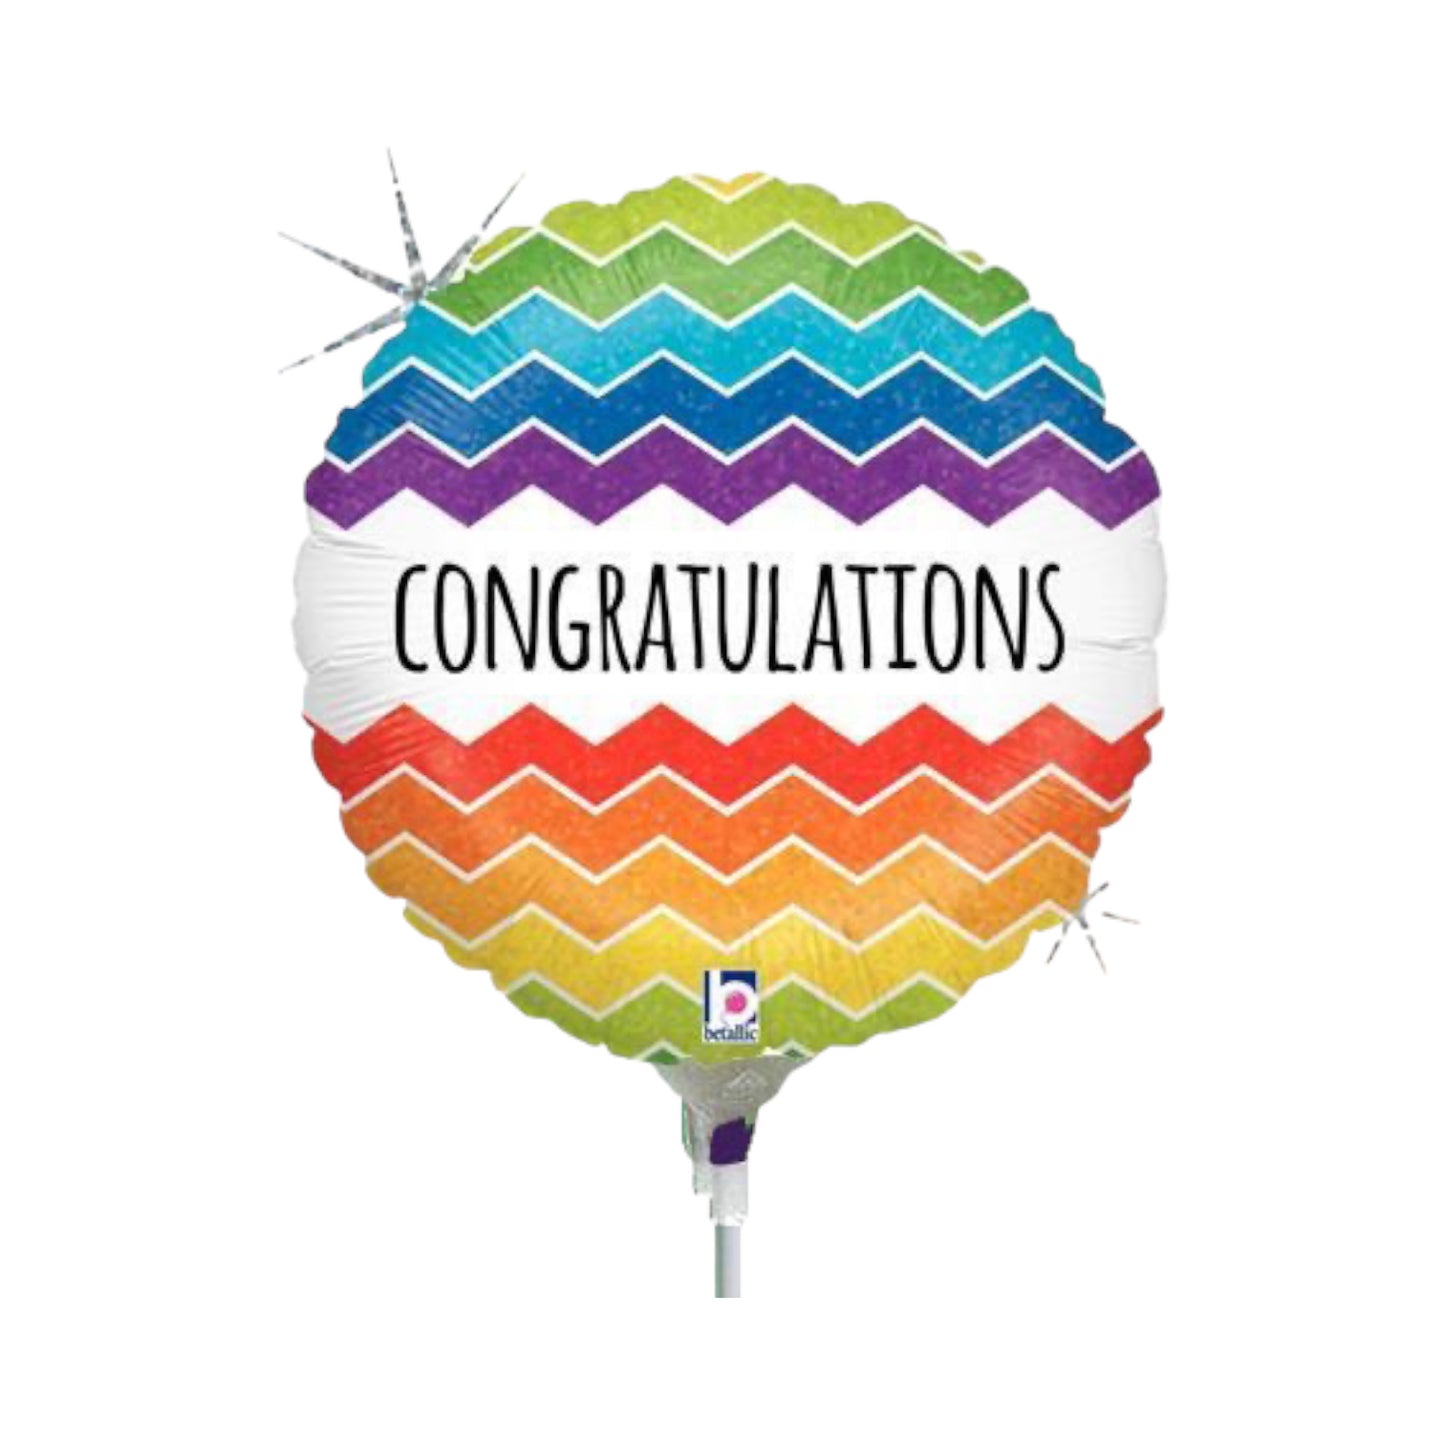 Congratulations Balloon - Multicoloured Zigzag Stripes.